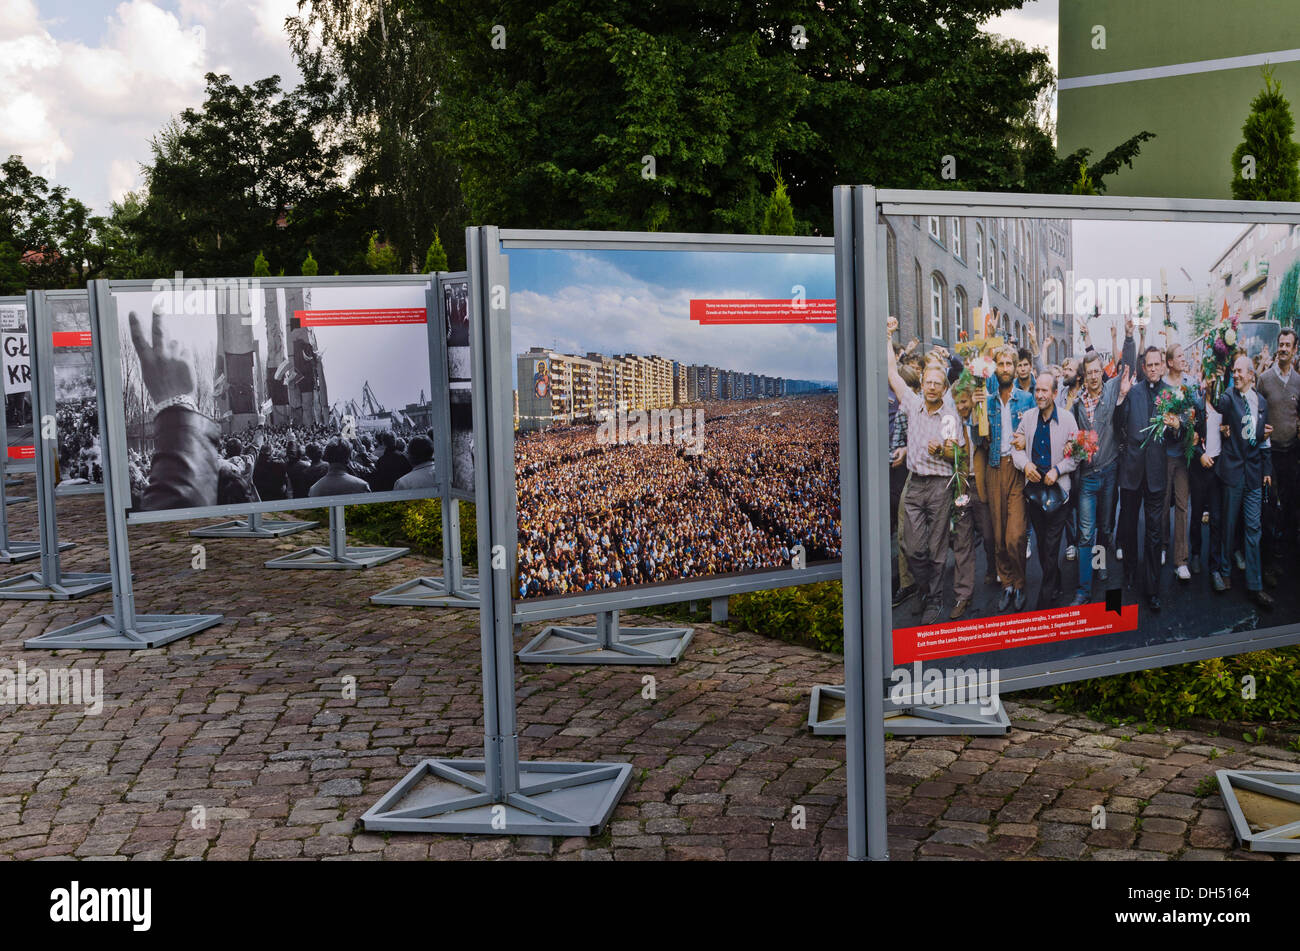 Exposition sur l'histoire de solidarité, le syndicat polonais, sur la place devant l'entrée principale de la gare de Gdansk Shipyard Banque D'Images